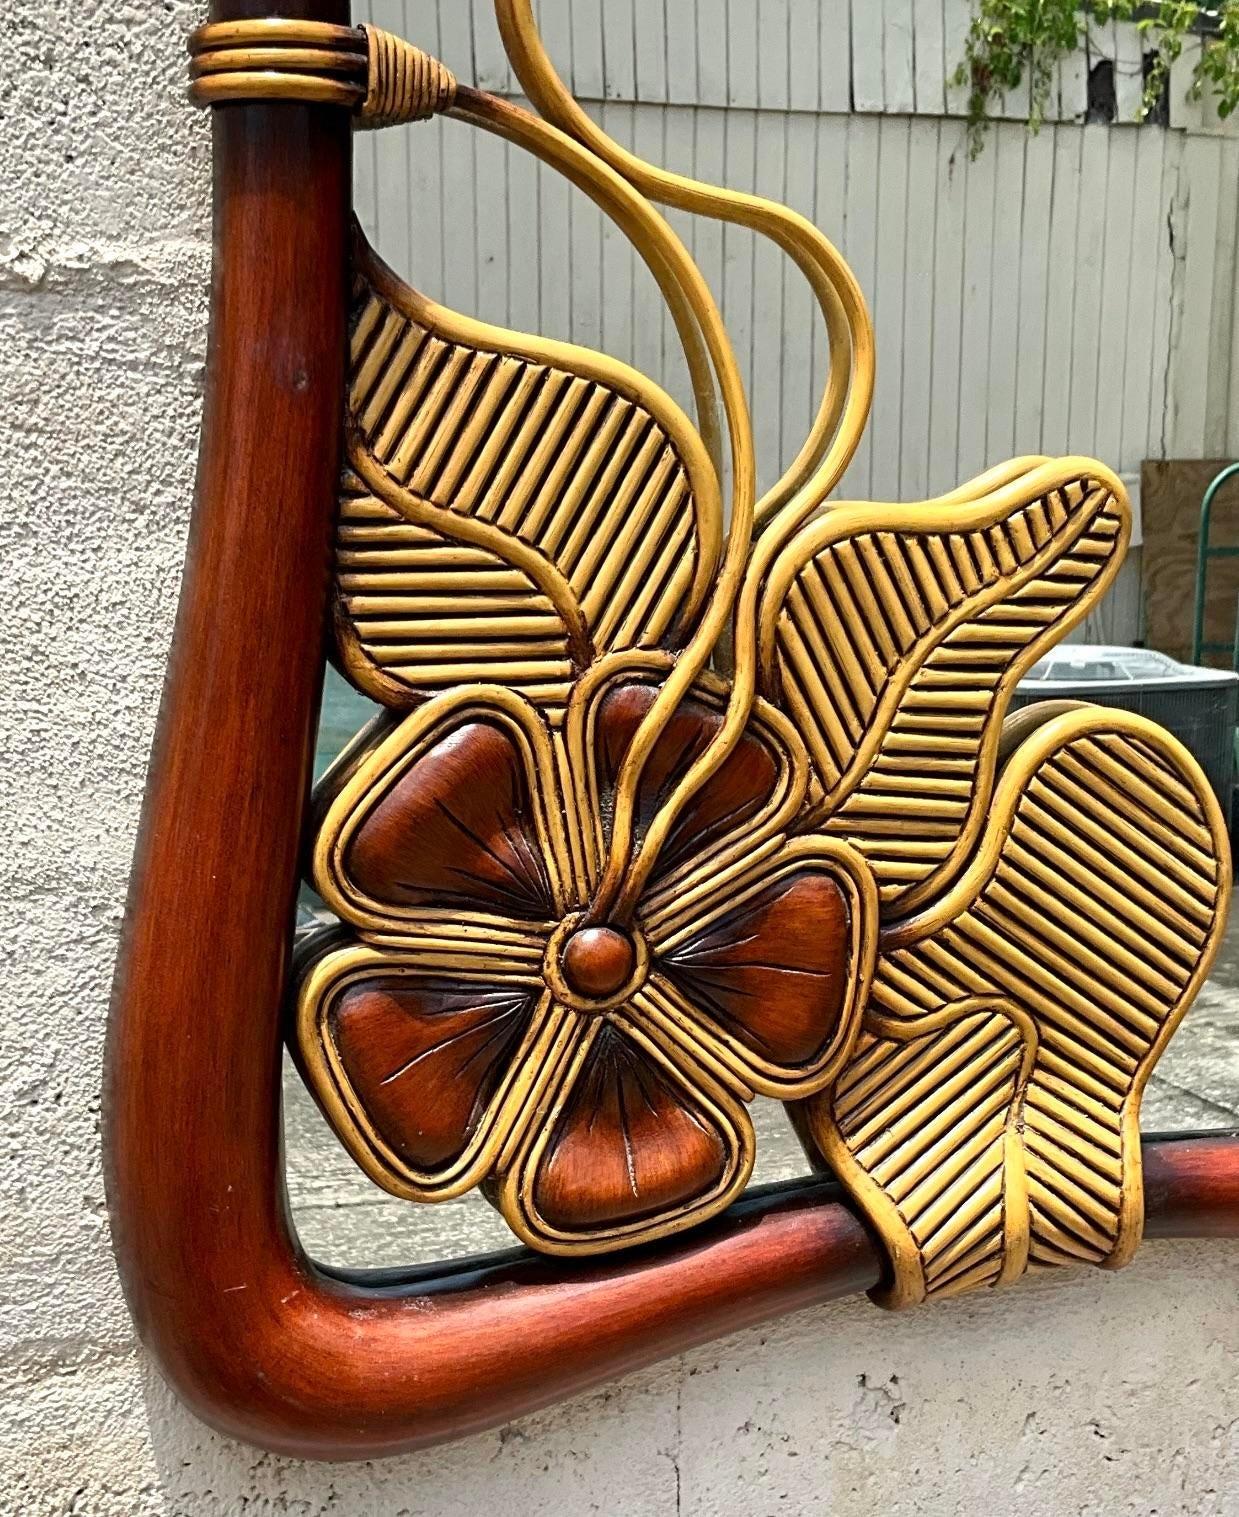 Verleihen Sie Ihrer Einrichtung einen küstennahen Touch mit diesem Vintage Coastal Pencil Reed Flower Mirror. Das von Blumen inspirierte Design ist mit zarten Bleistiftschilf-Details versehen und erinnert an die Gelassenheit des Lebens am Meer.